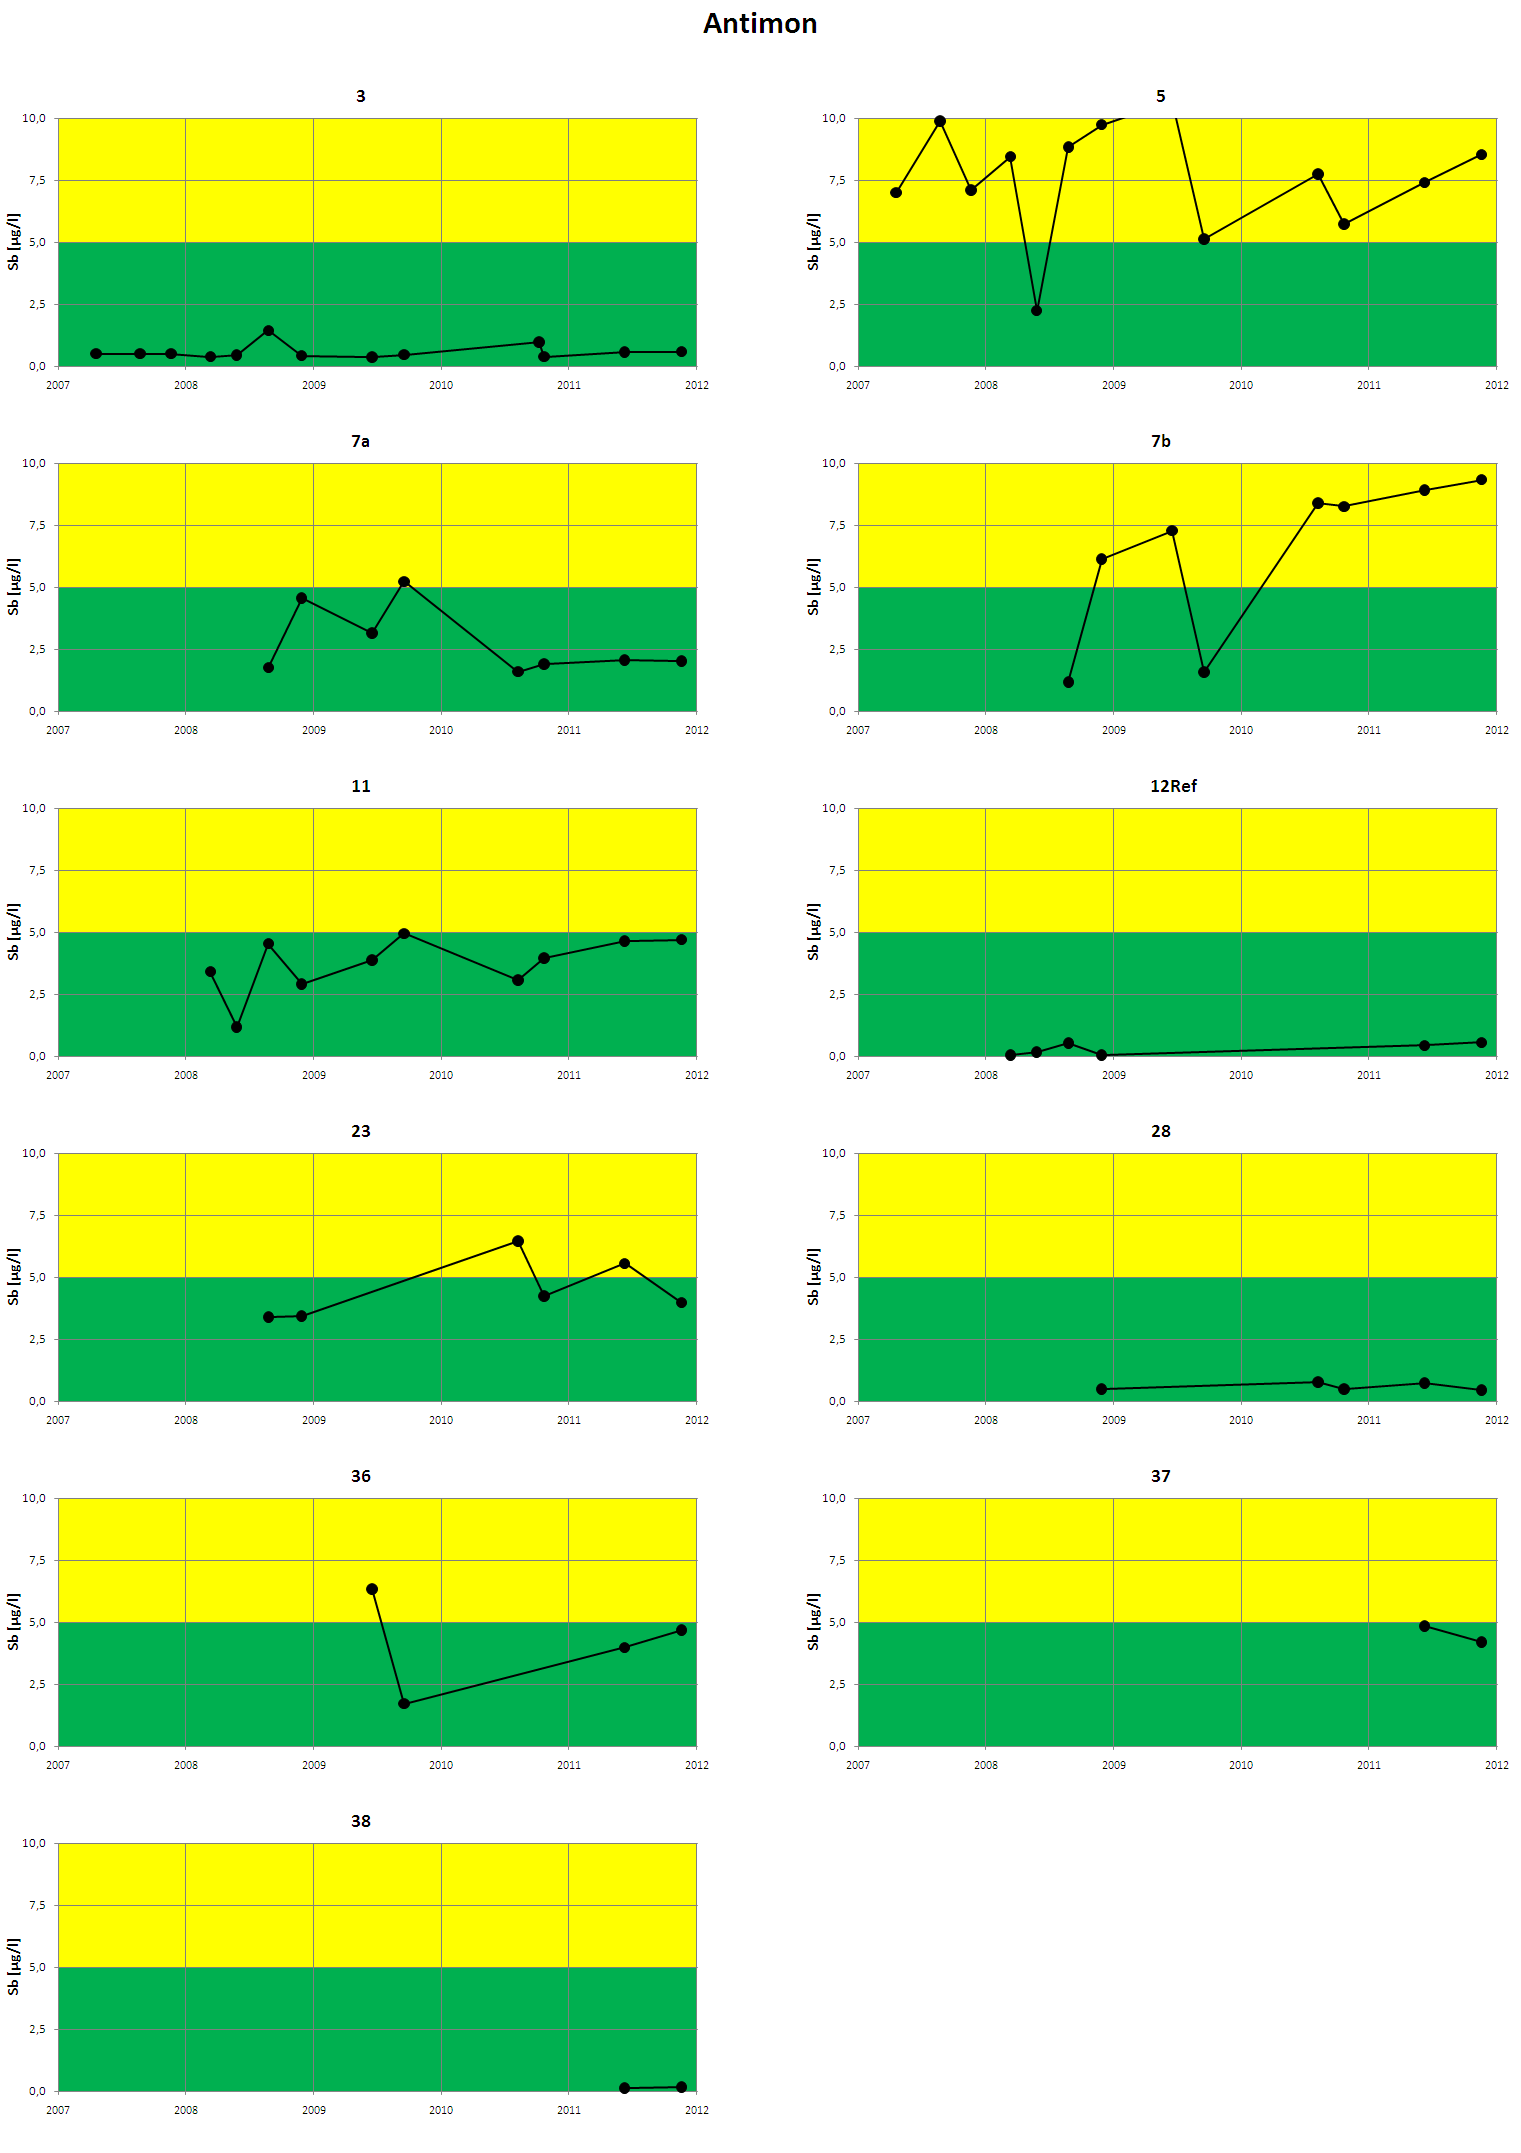 Figur 5. Analyseresultater for antimon i perioden 2007-2010. Før 2010 ble analyseresultater under deteksjonsgrensen (dg) rapportert som dg/2.